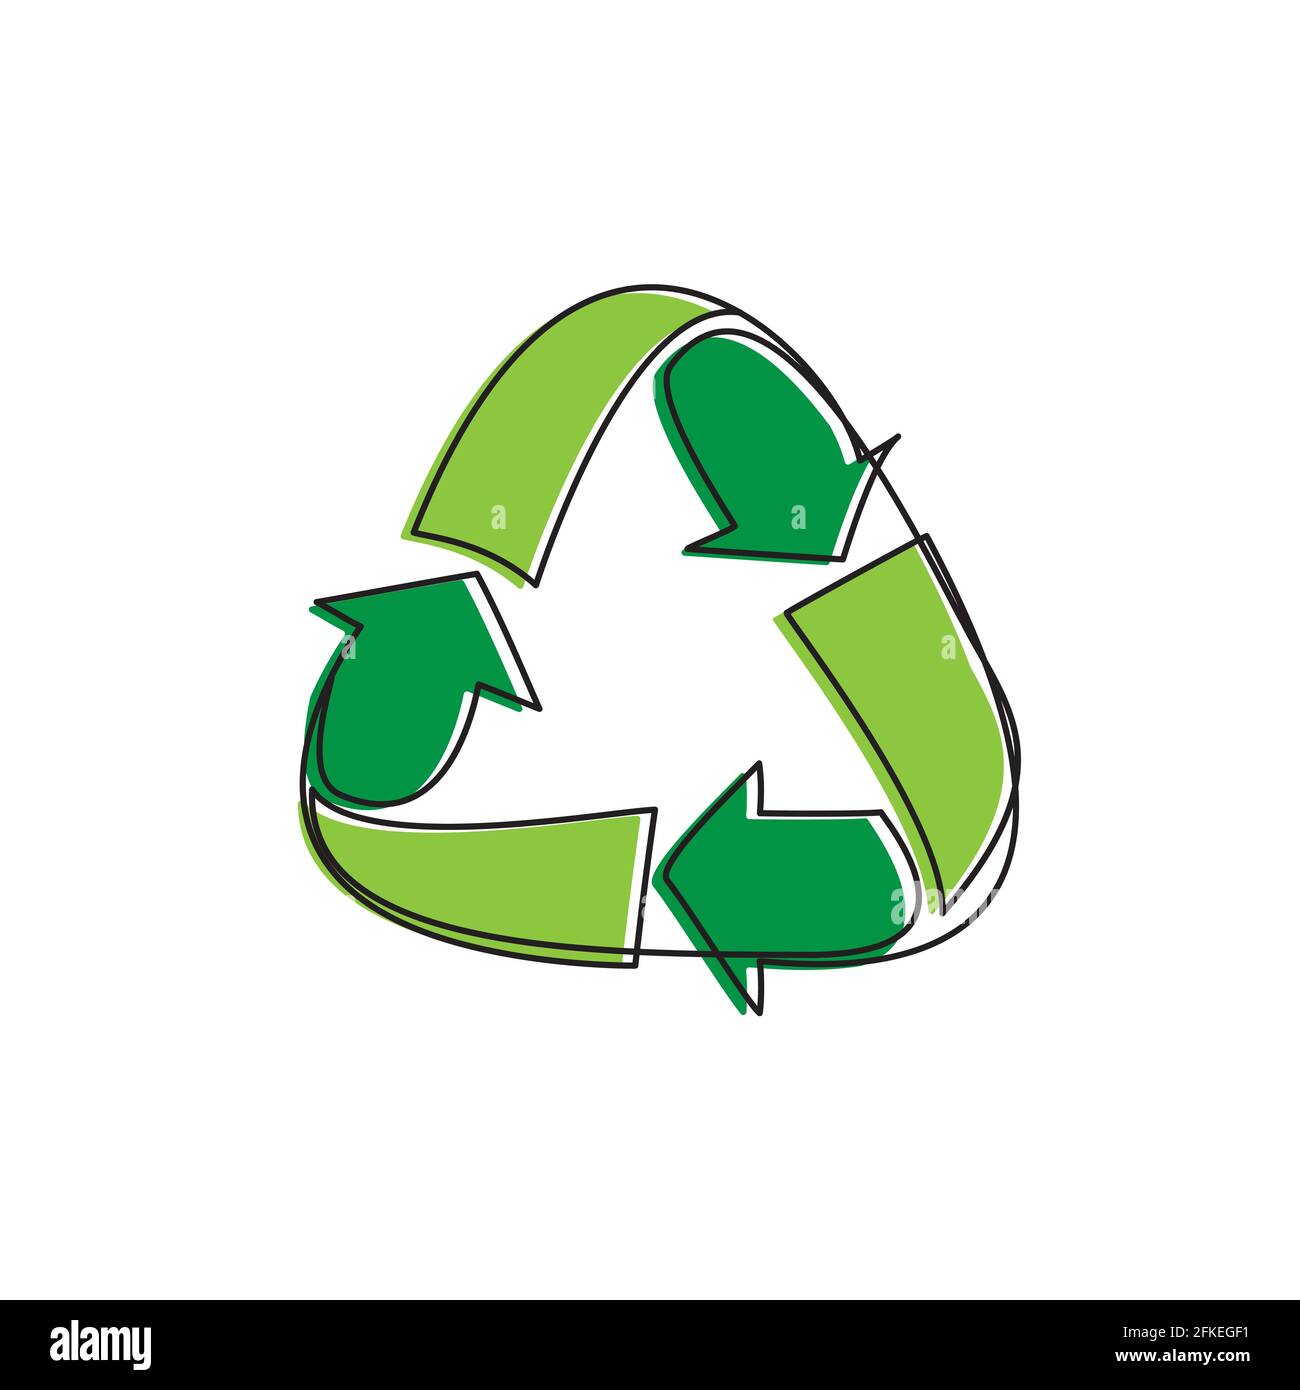 Simbolo di riciclo illustrazione vettoriale del disegno a linea singola. Protezione ambientale verde riutilizzando l'immagine del segno. Illustrazione Vettoriale